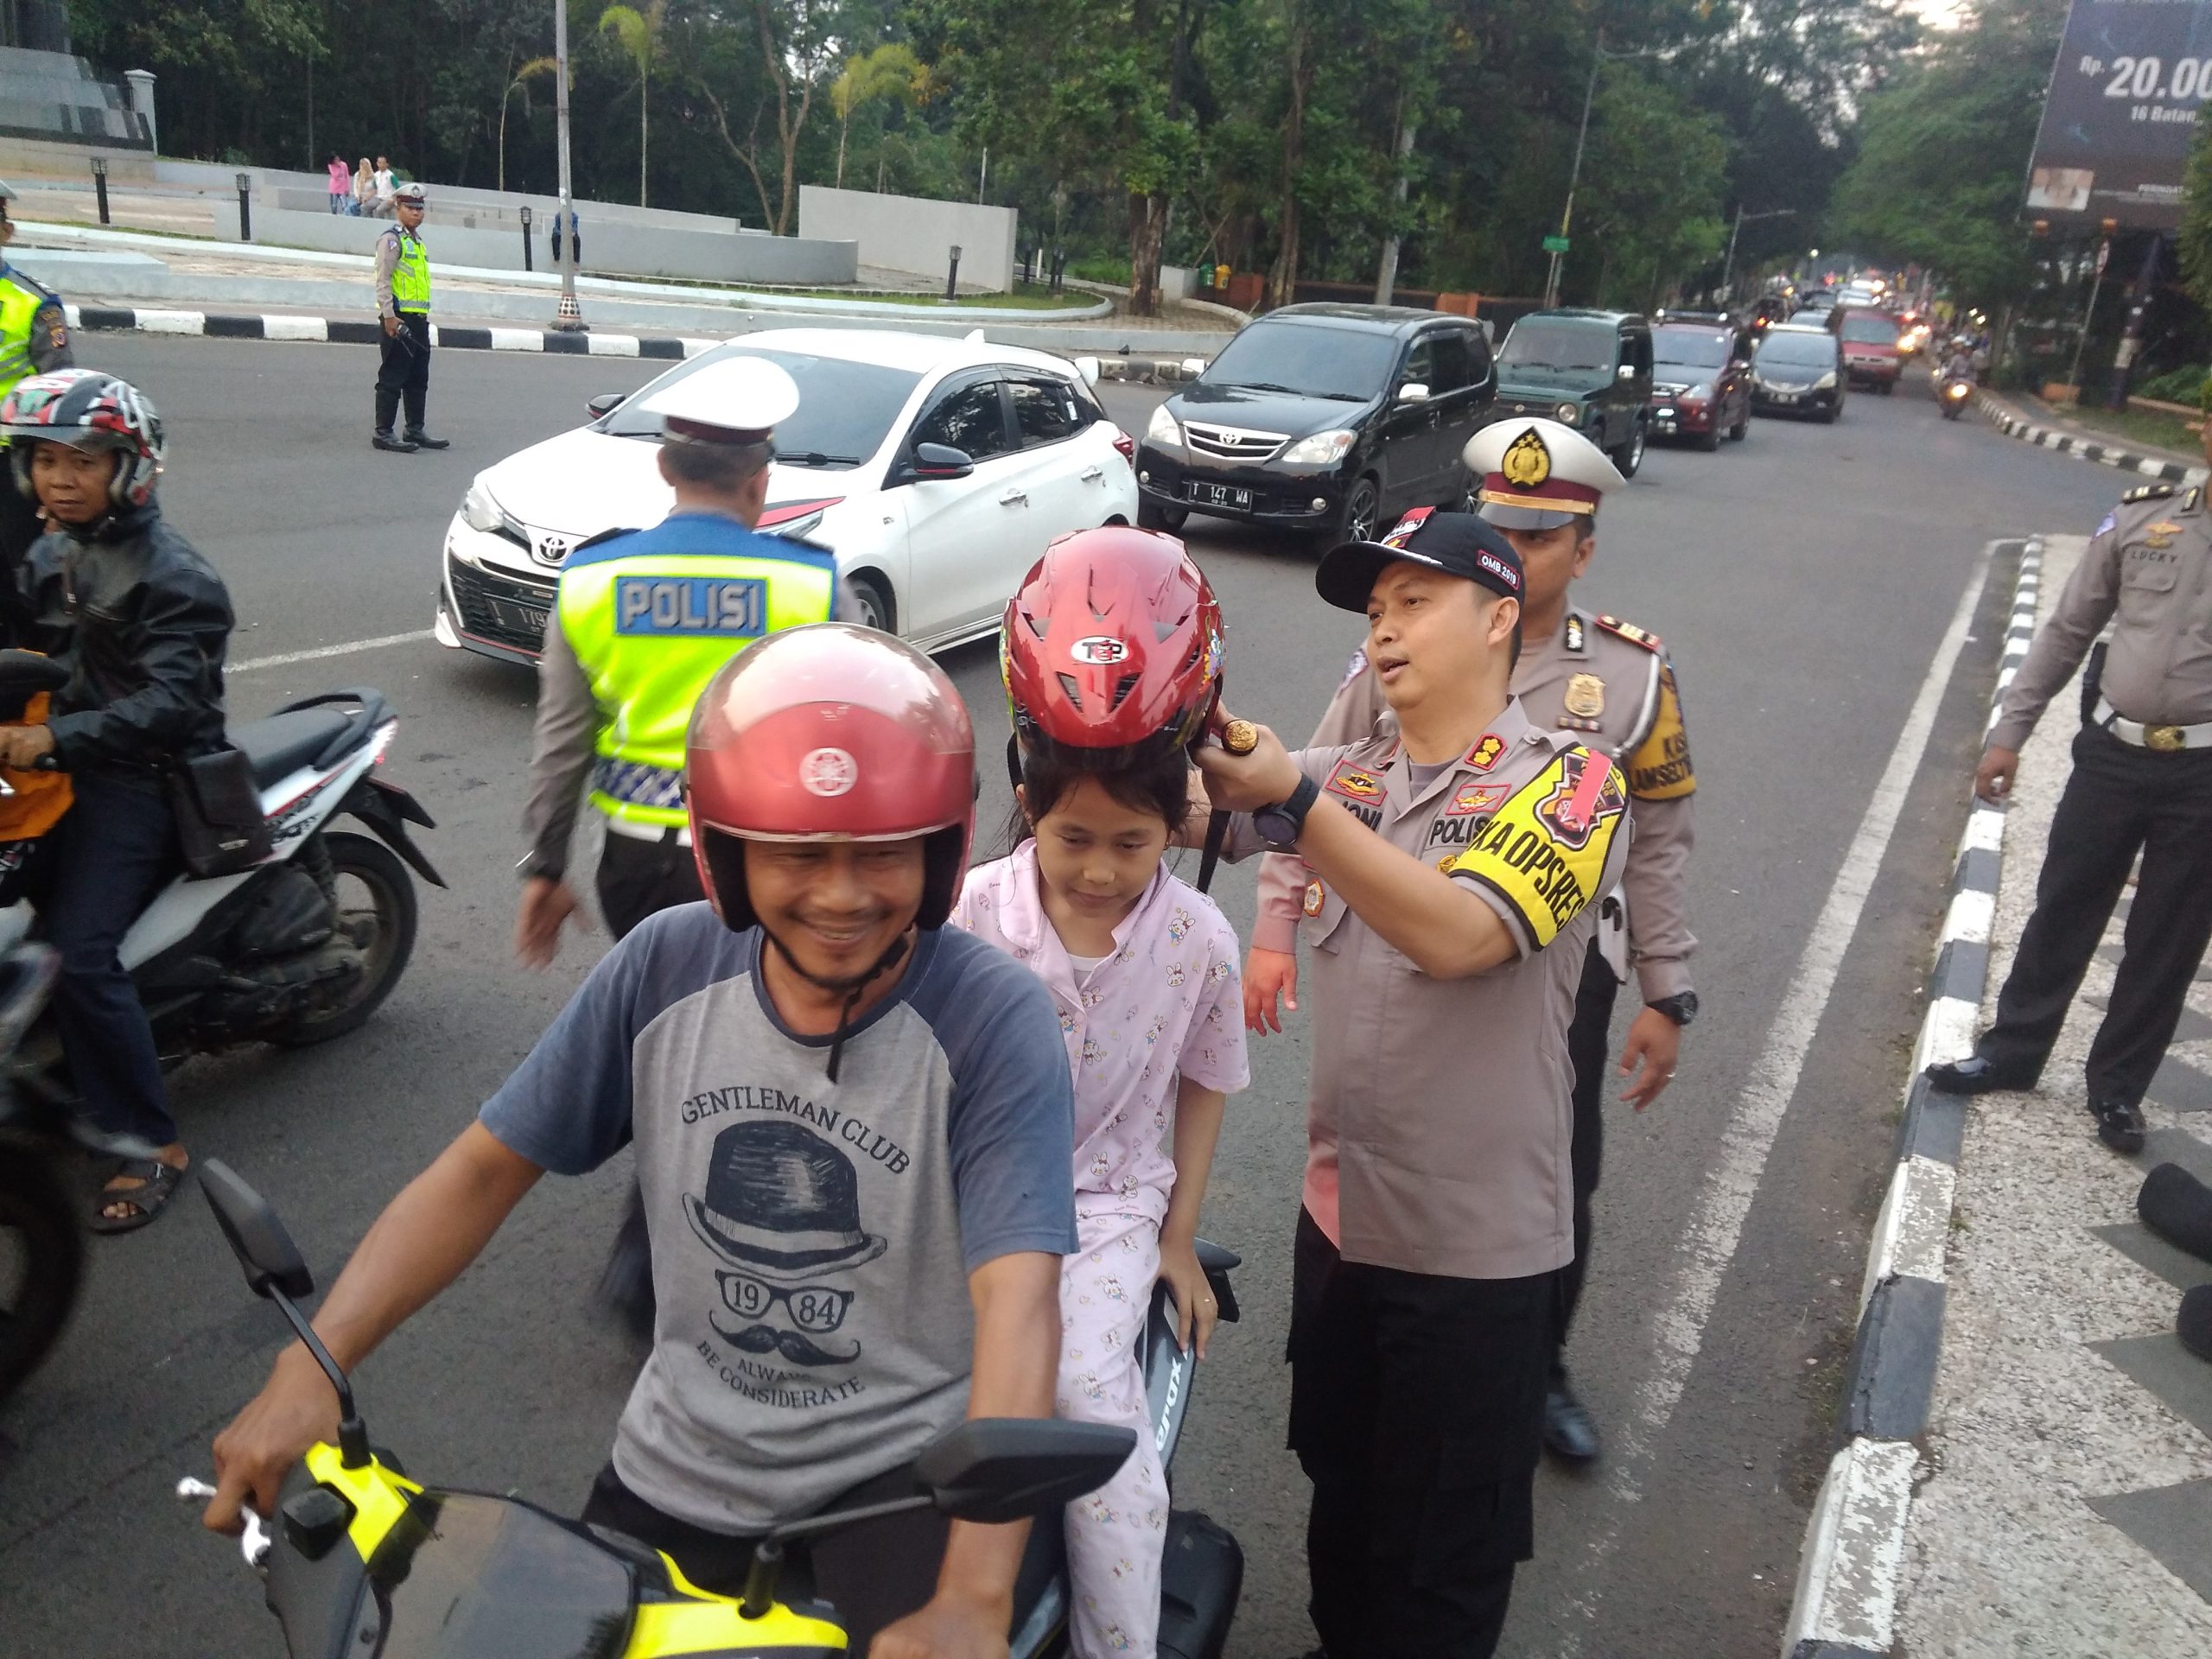 Hari Peertama Puasa, Jajaran Polres Subang Bagikan Helm dan Takjil Gratis